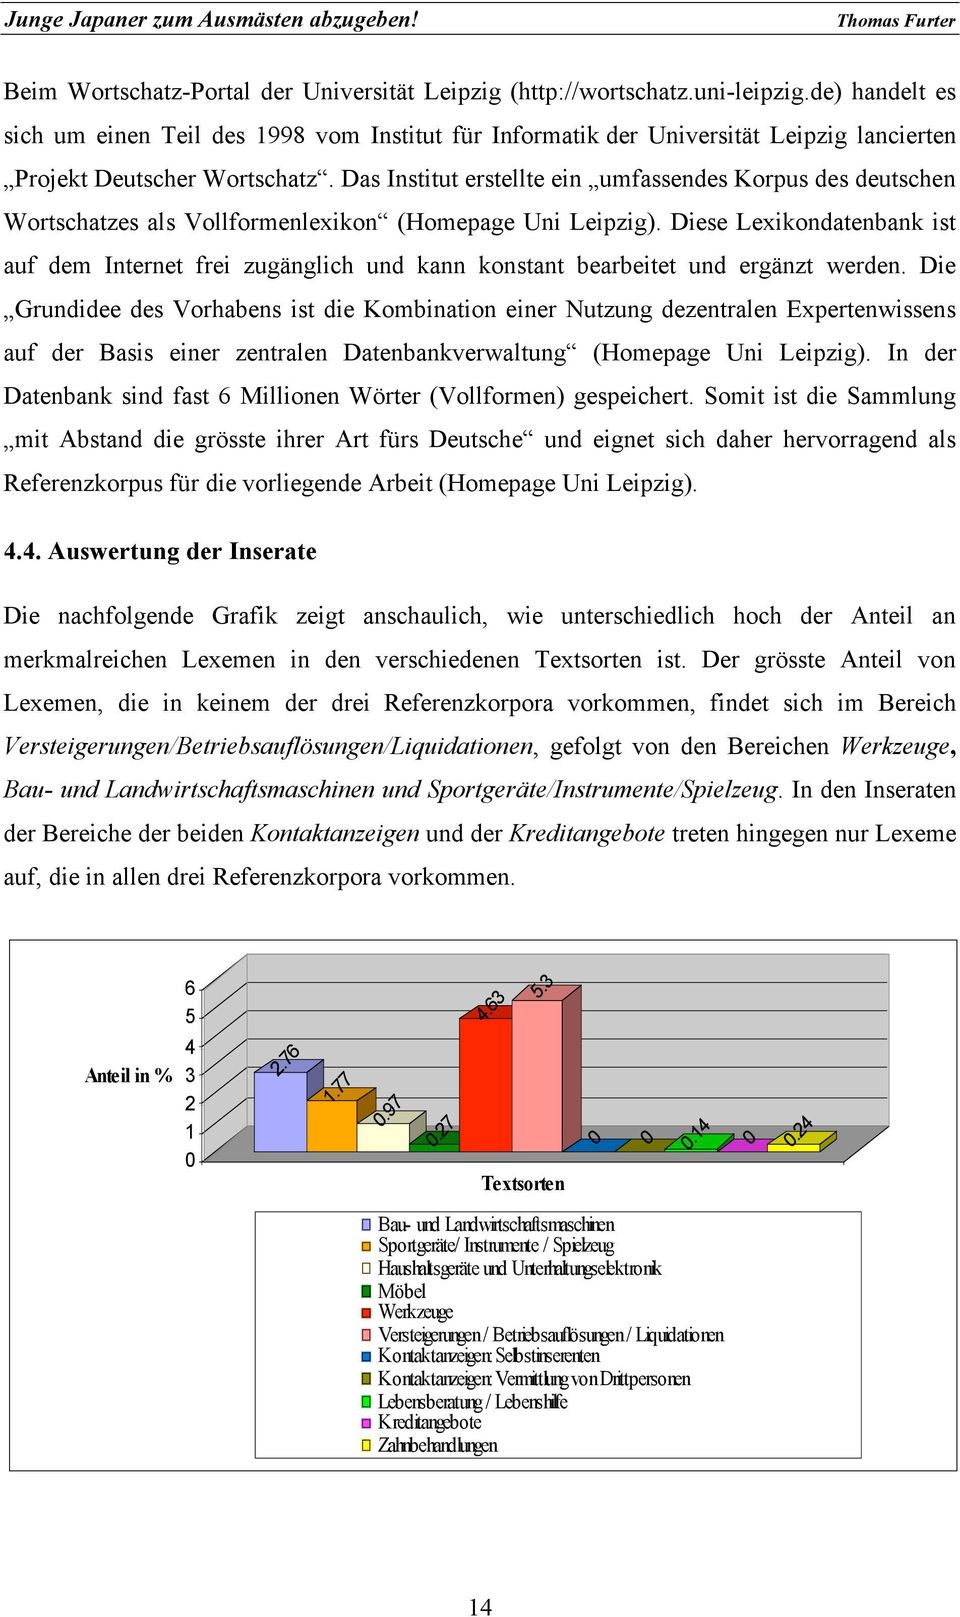 Das Institut erstellte ein umfassendes Korpus des deutschen Wortschatzes als Vollformenlexikon (Homepage Uni Leipzig).